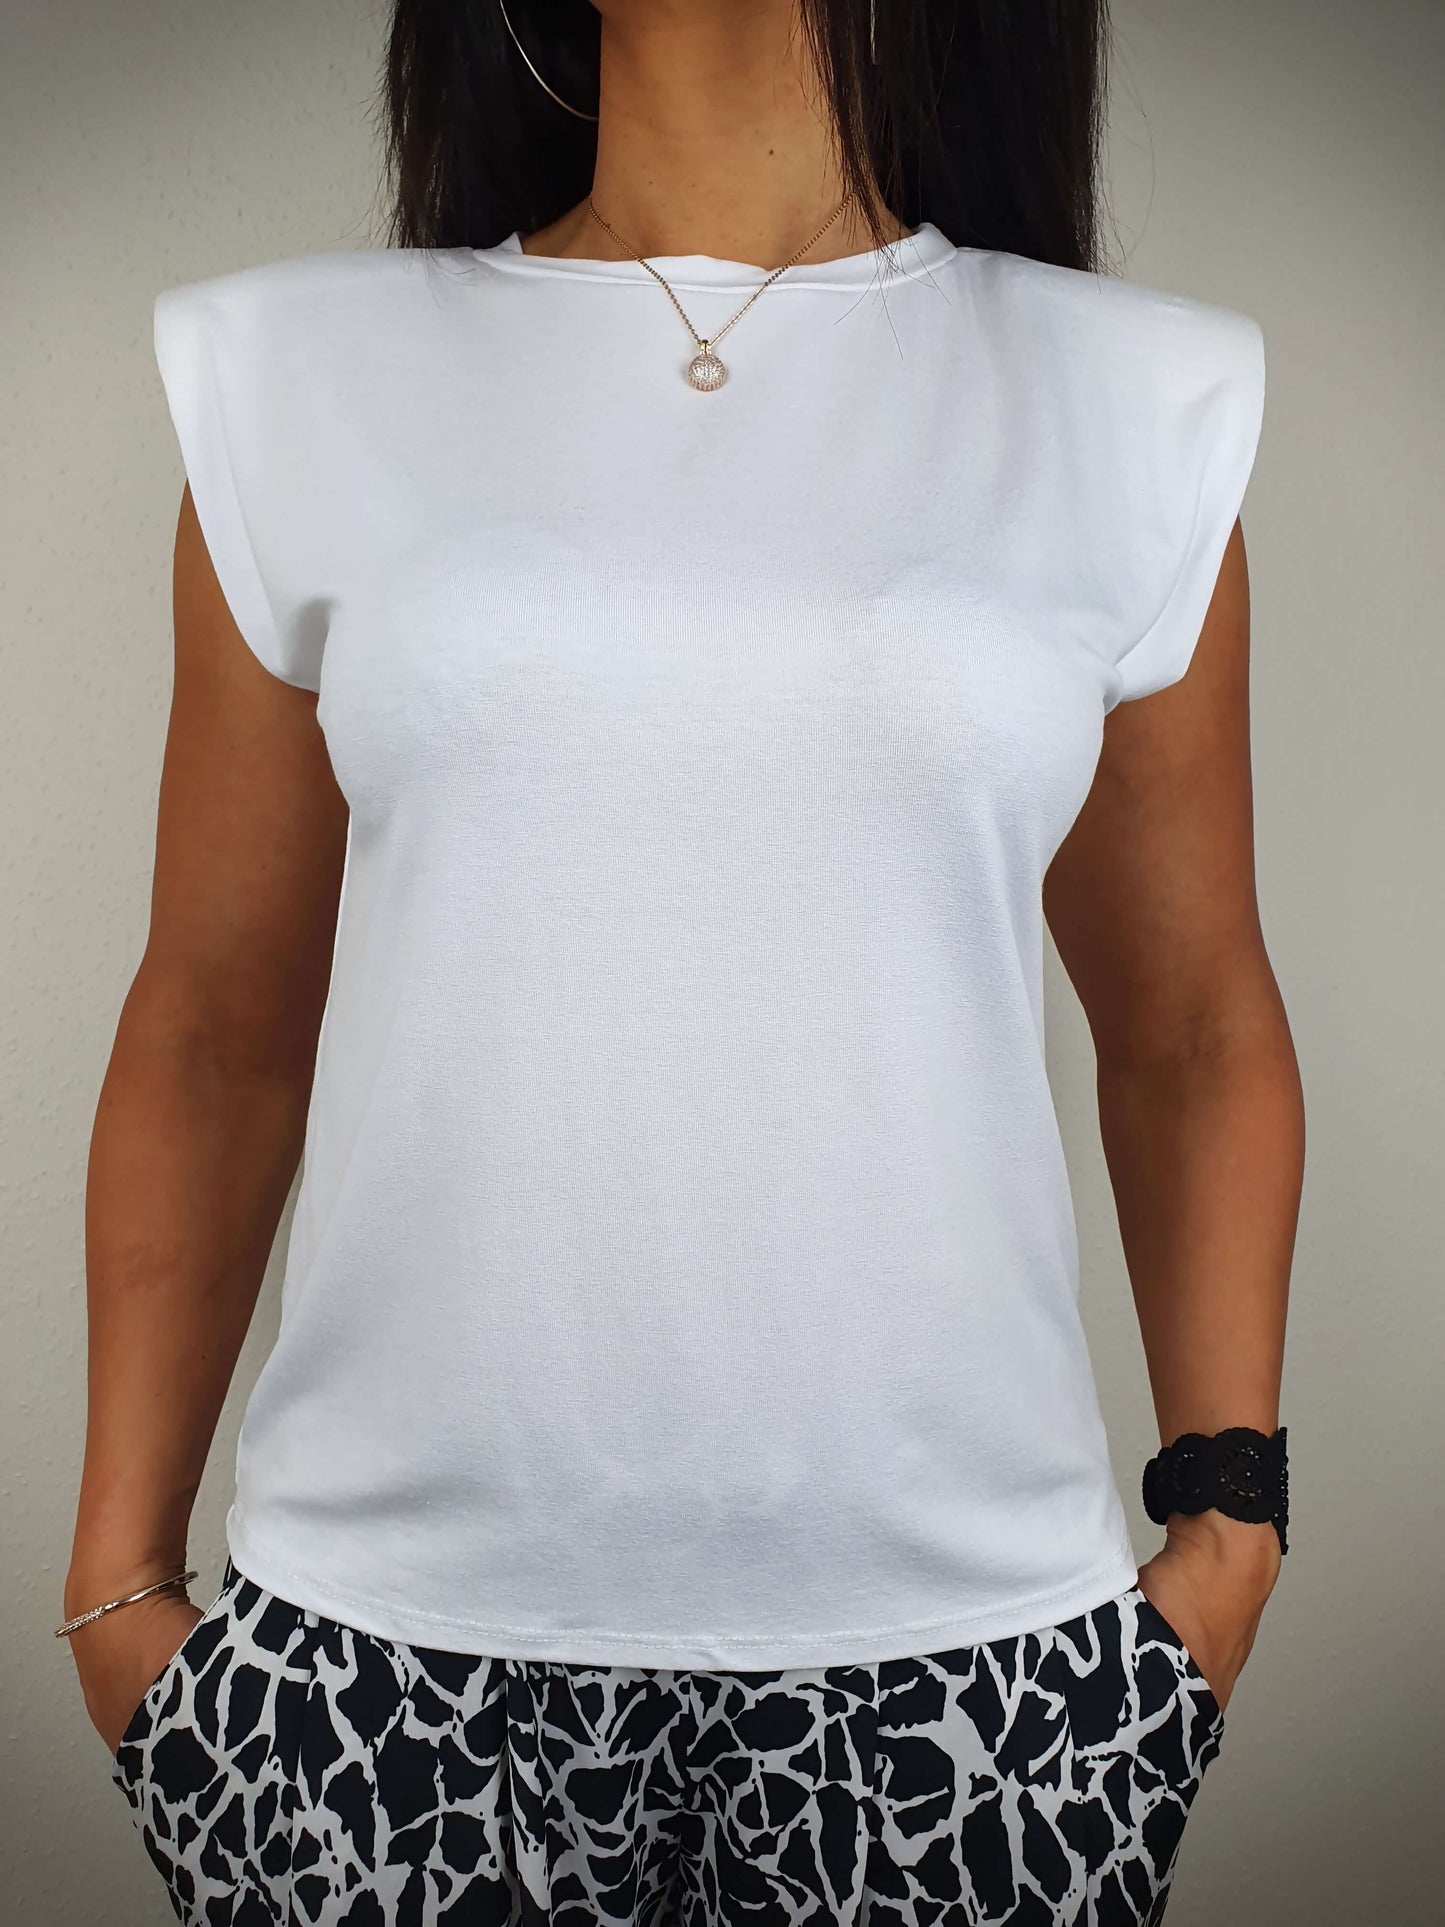 Le T-shirt blanc à une coupe droite et un col rond classique. Ses manches courtes sont dotées d'épaulettes. Fabriqué en Italie, il est composé de 95% de viscose et 5% d'élasthanne.